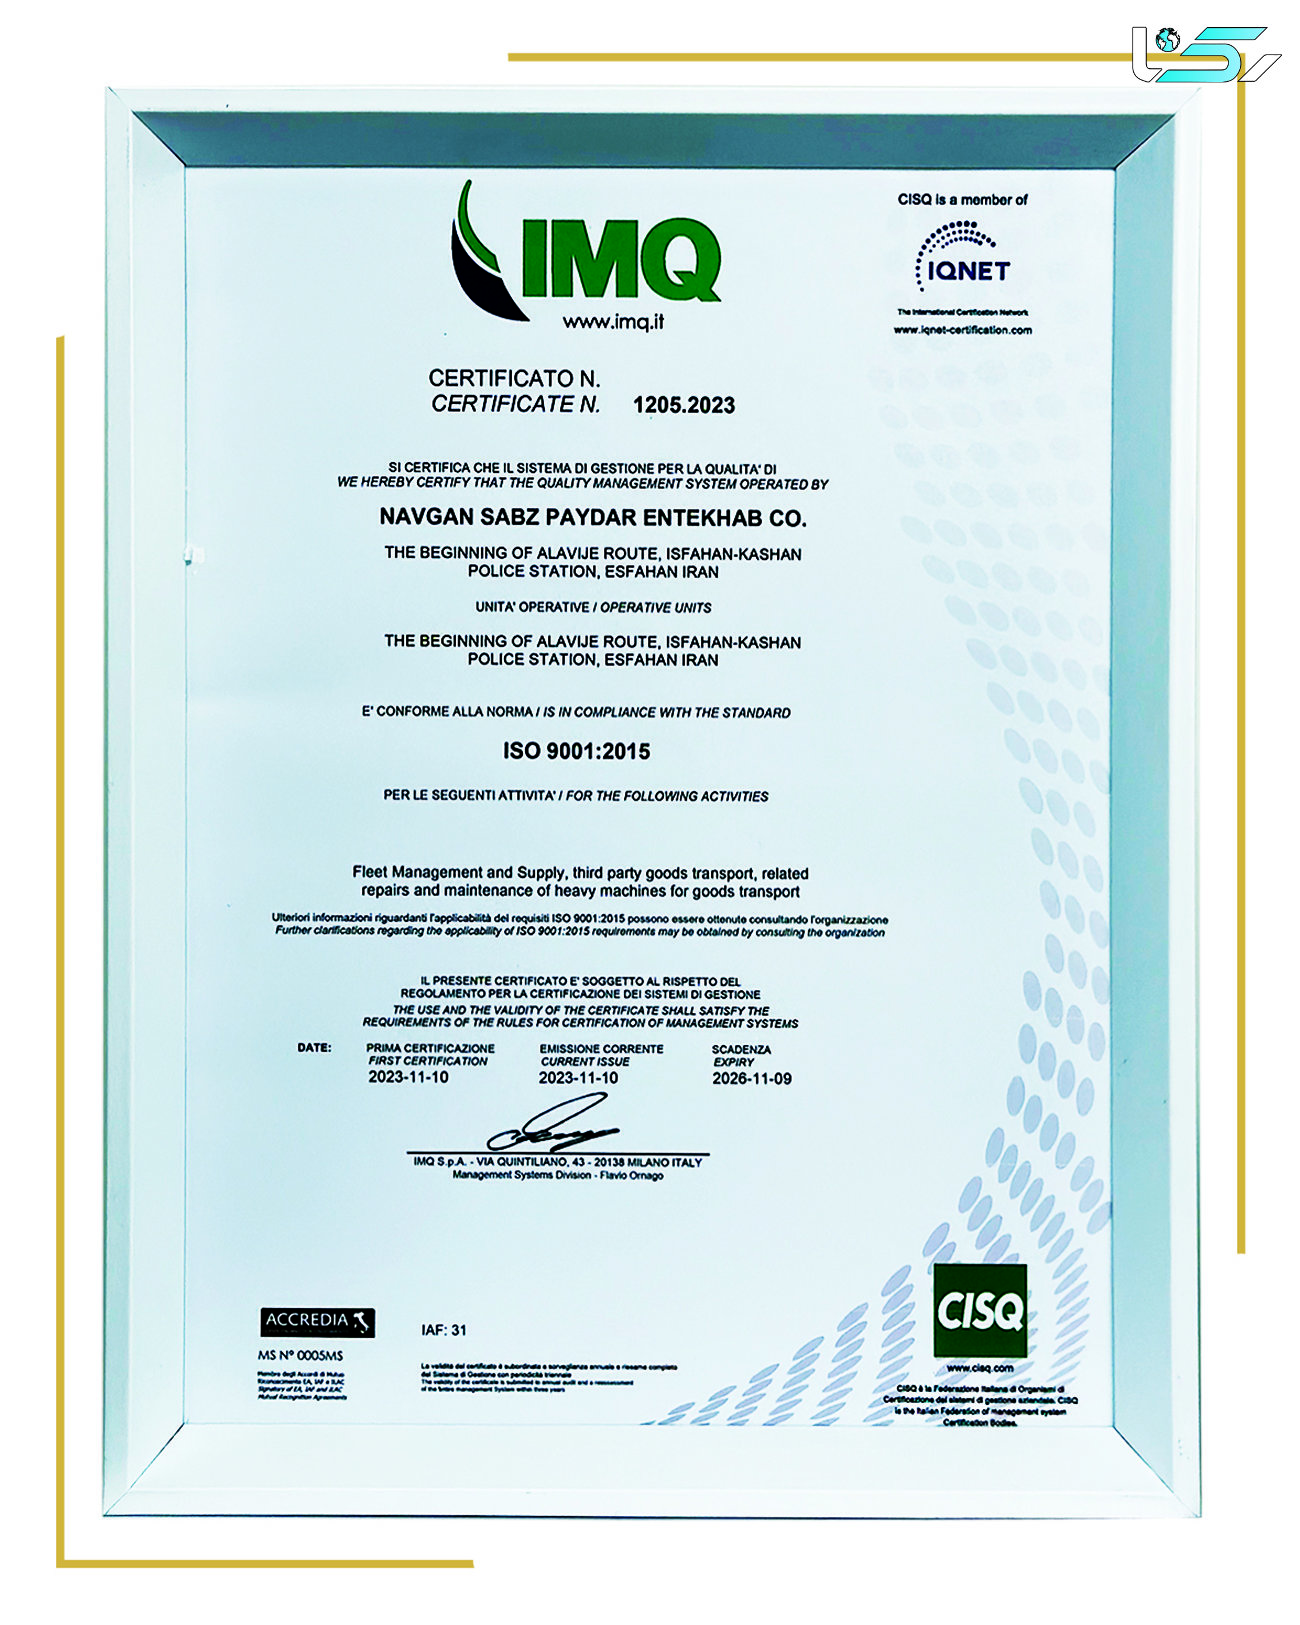 دریافت گواهینامه ISO 9001 با رویکرد کیفیت و بهبود از سوی هلدینگ دکا